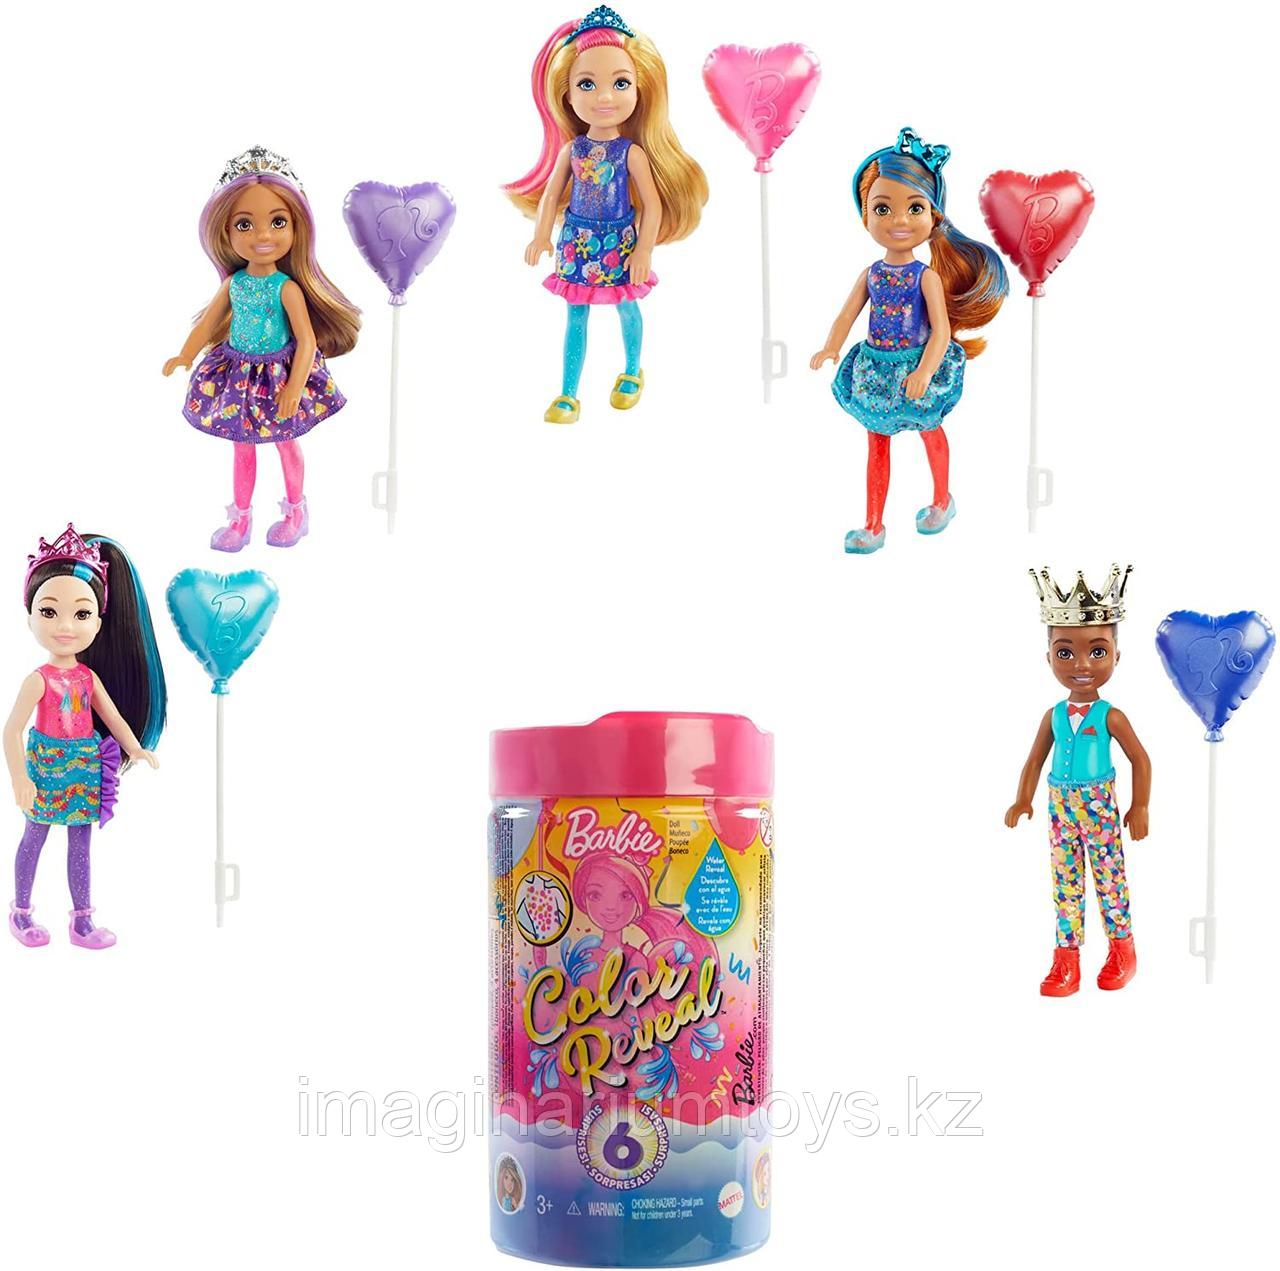 Кукла Челси меняющая цвет в воде Barbie Chelsea Color Reveal Праздничная серия, фото 1